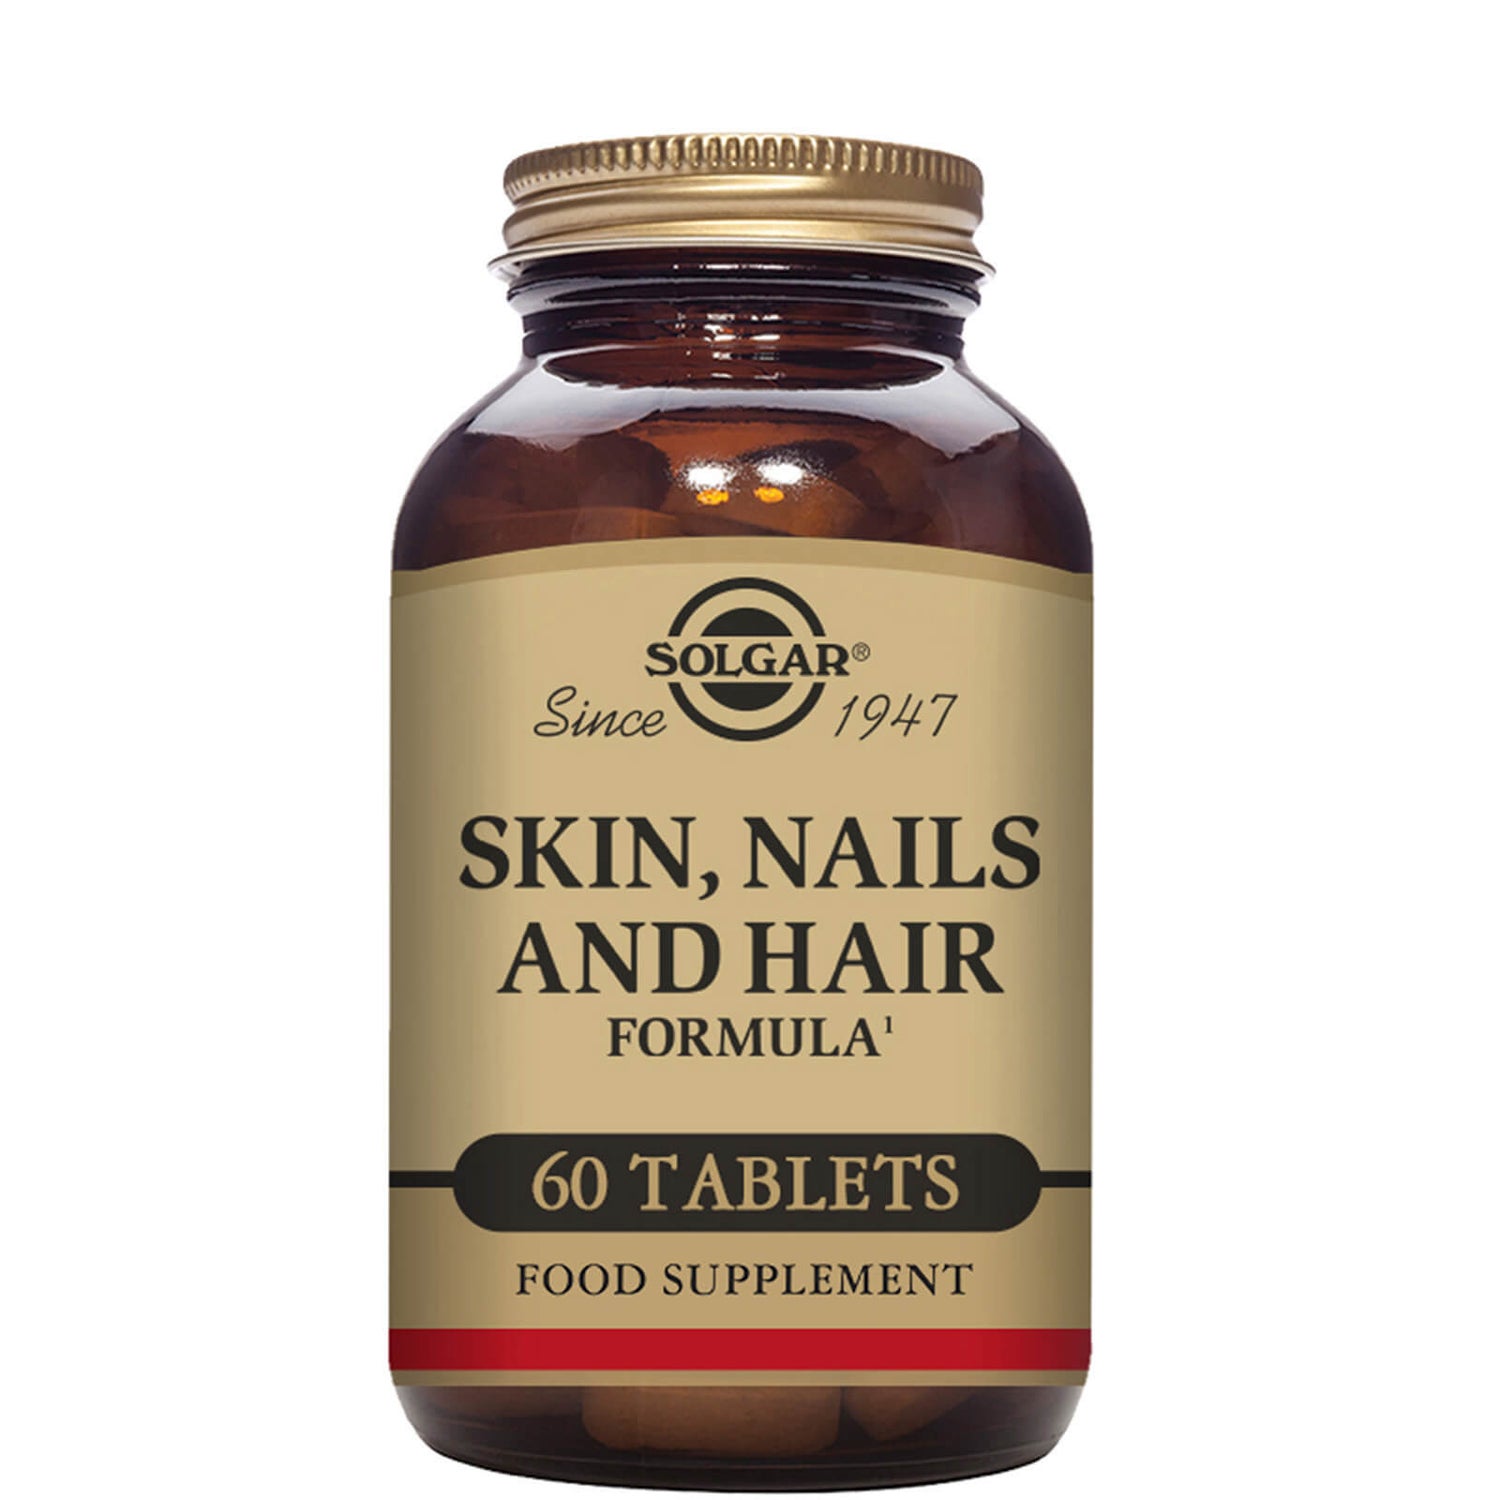 Solgar Skin, Nails and Hair Formula Tablets - Pack of 60